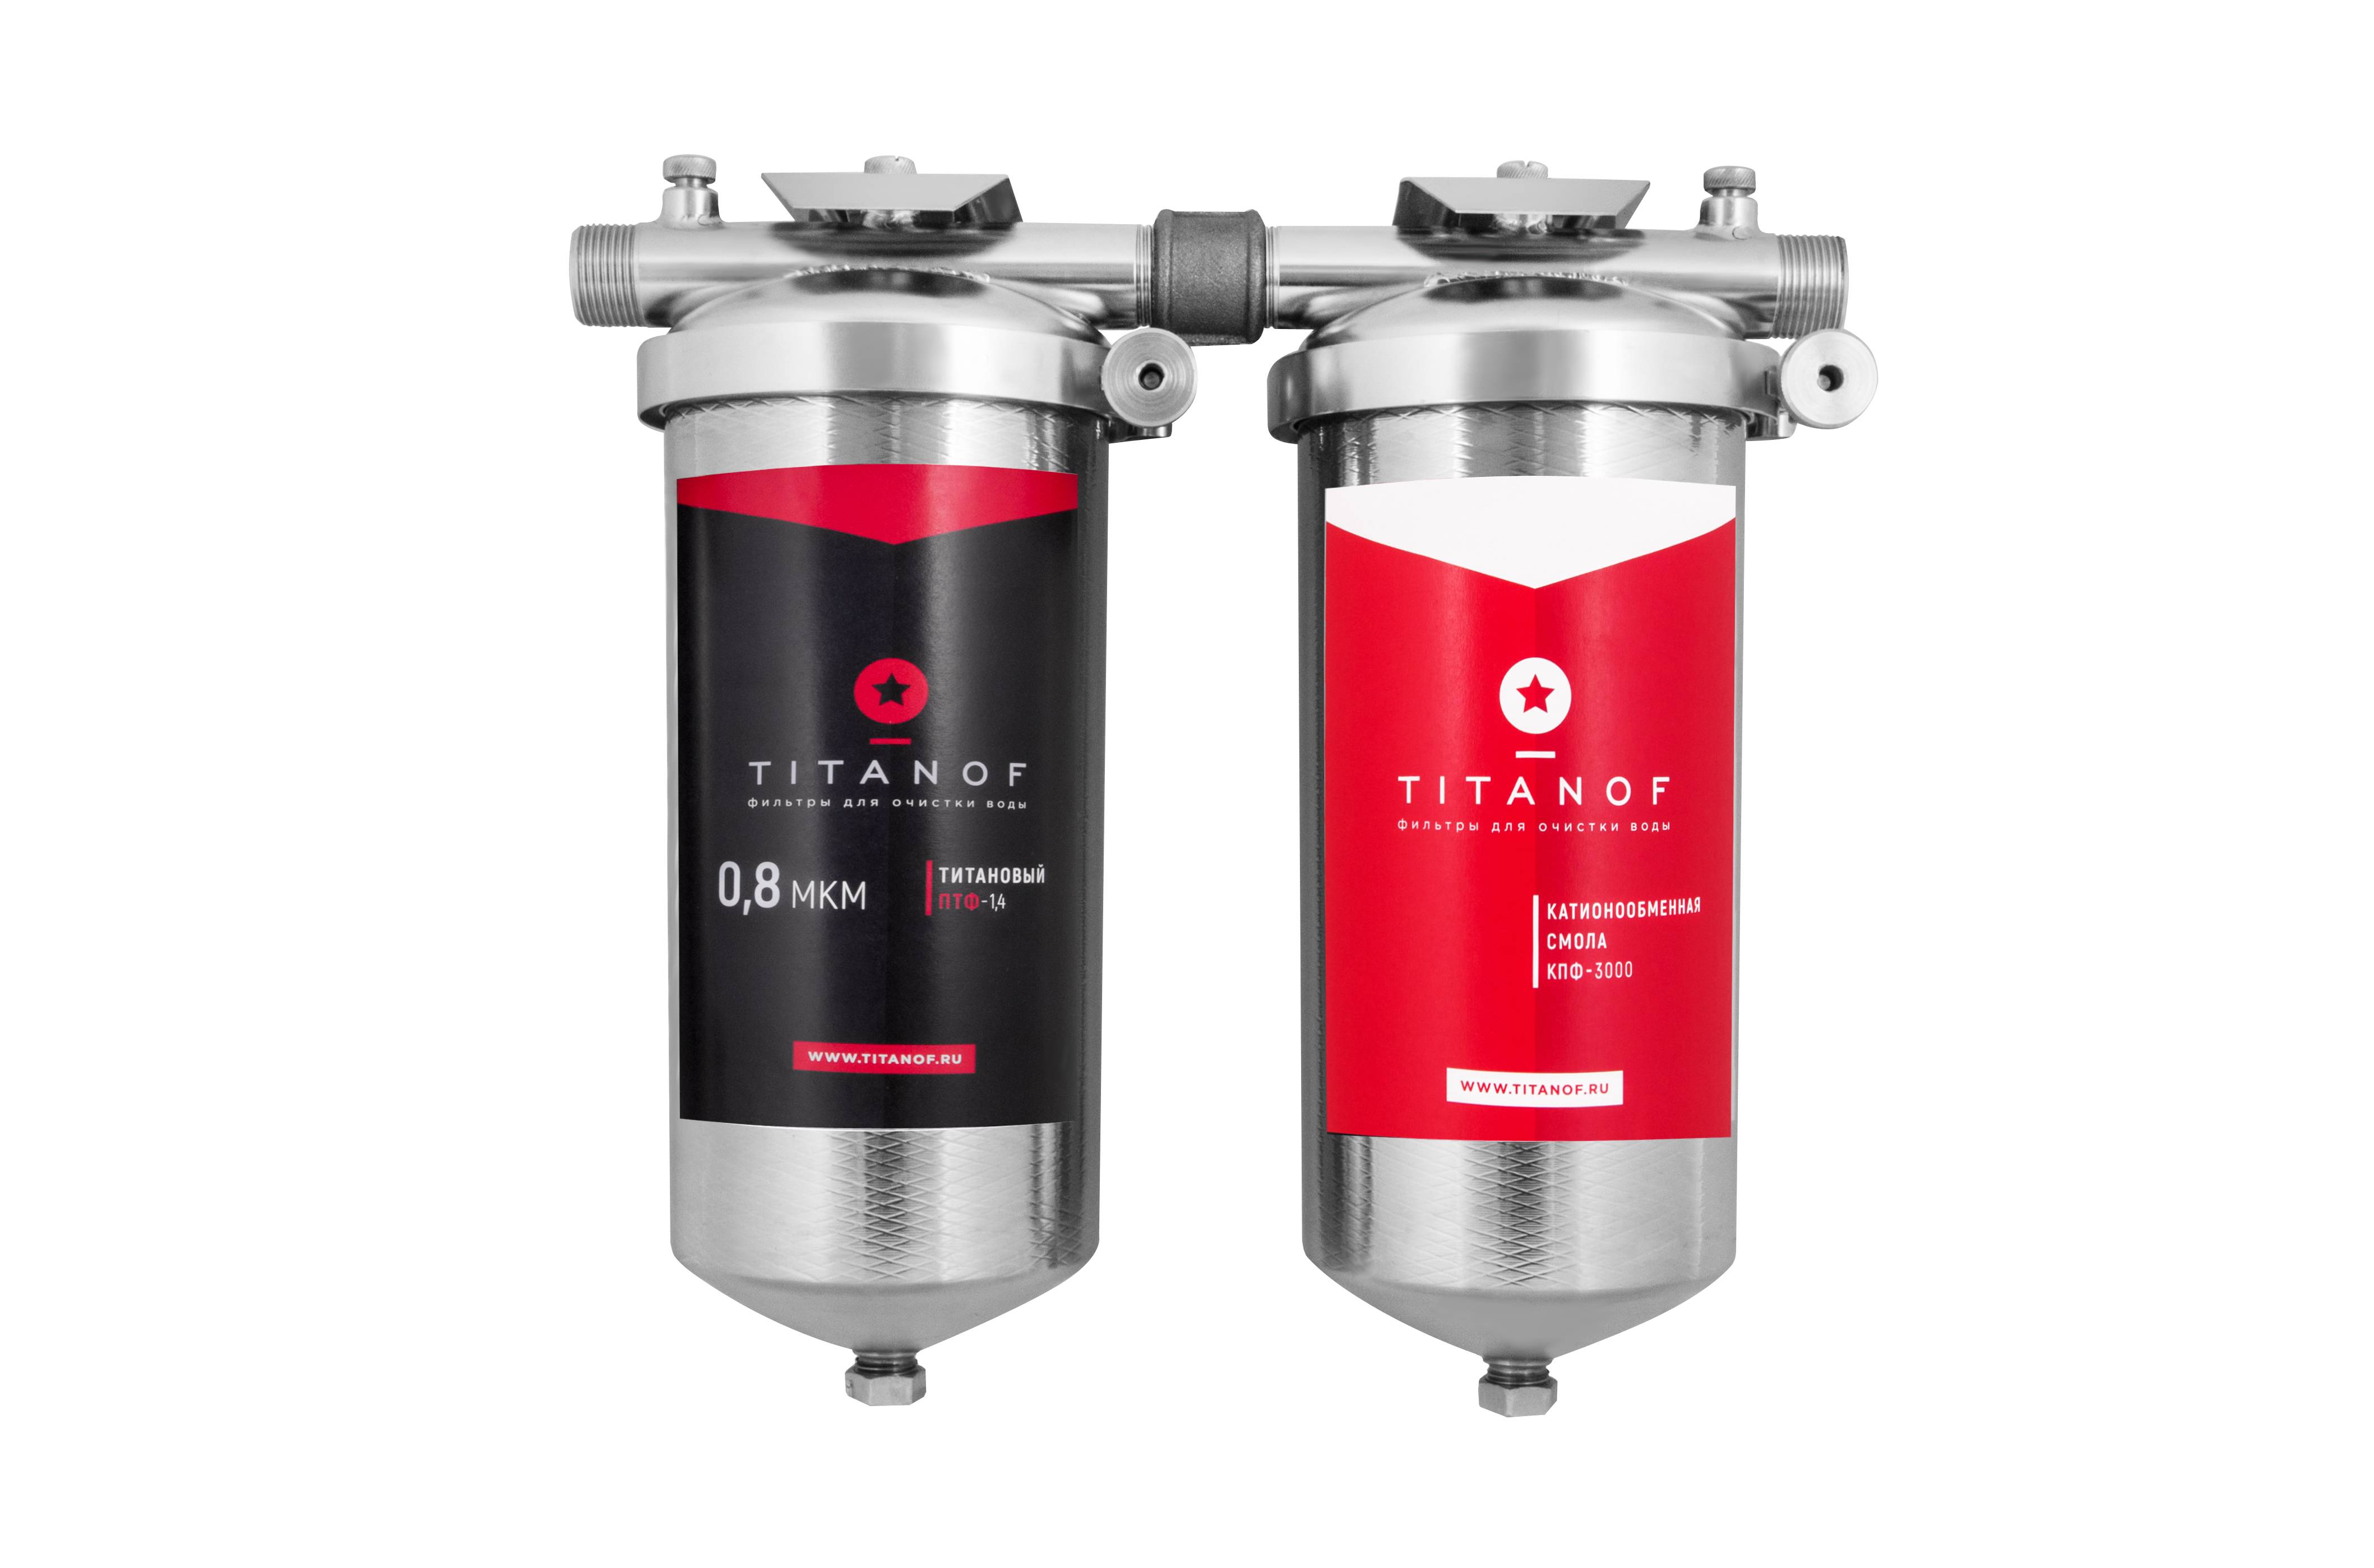 Титановый фильтр для воды титанов (titanof) отзывы: миф или реальность